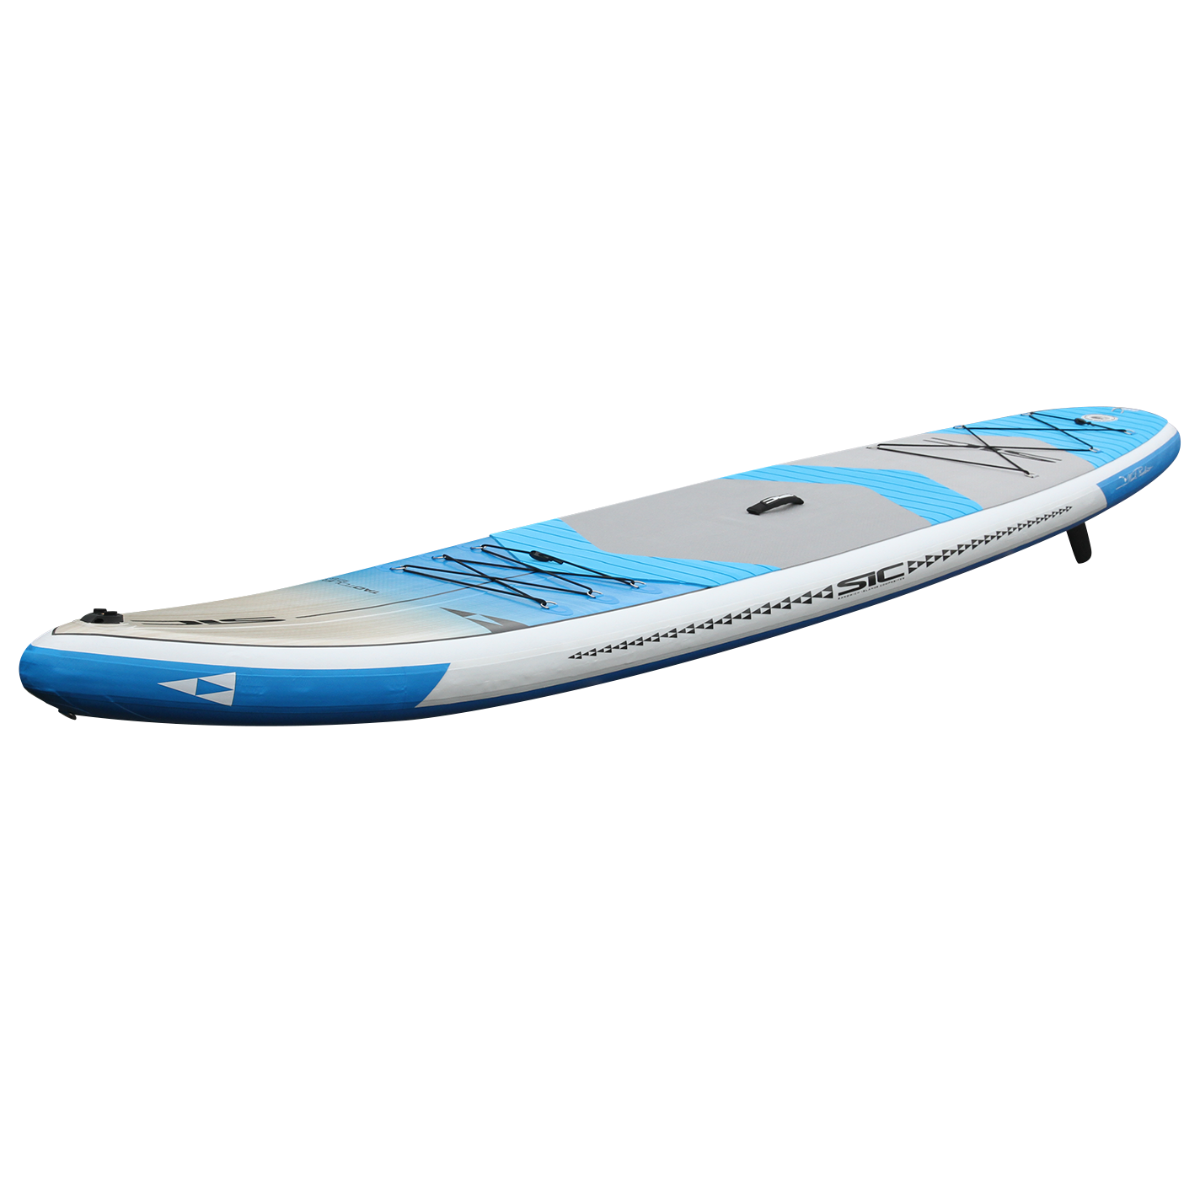 Glide Yoga Paddleboard and SUP board.